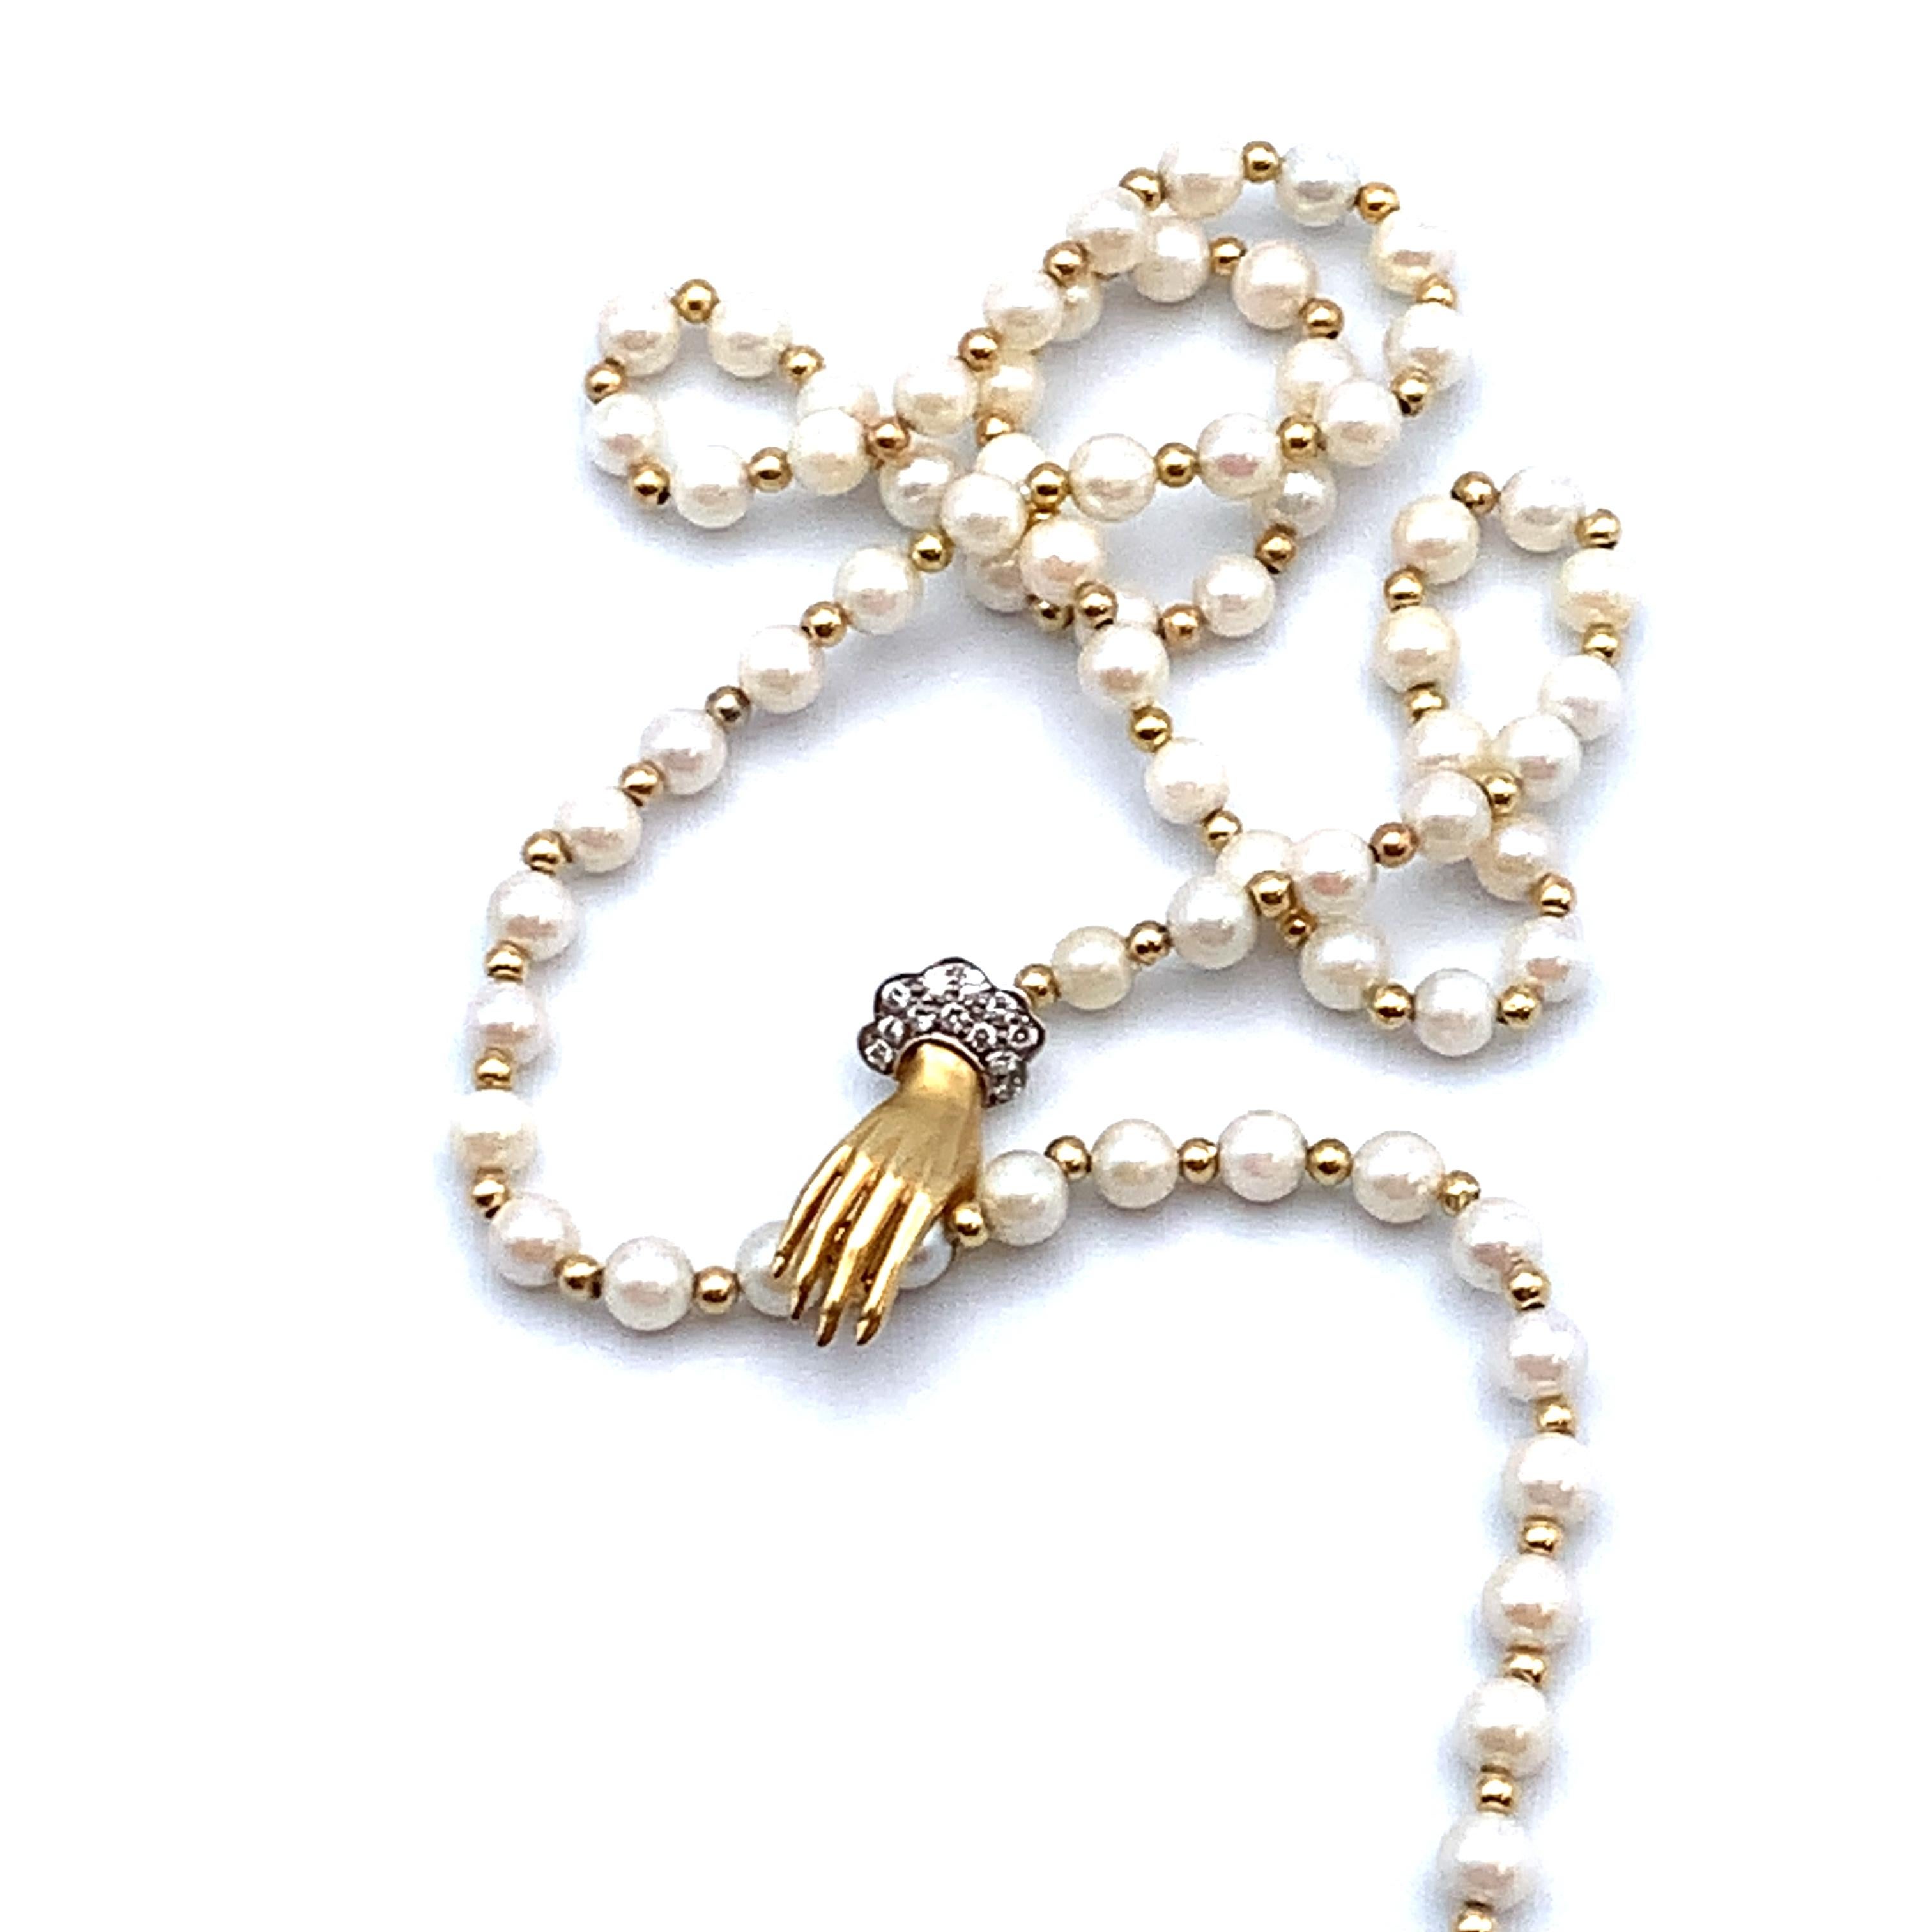 Lariat-Halskette mit abwechselnden Perlen und Goldperlen.  Der Verschluss besteht aus einer figuralen Hand